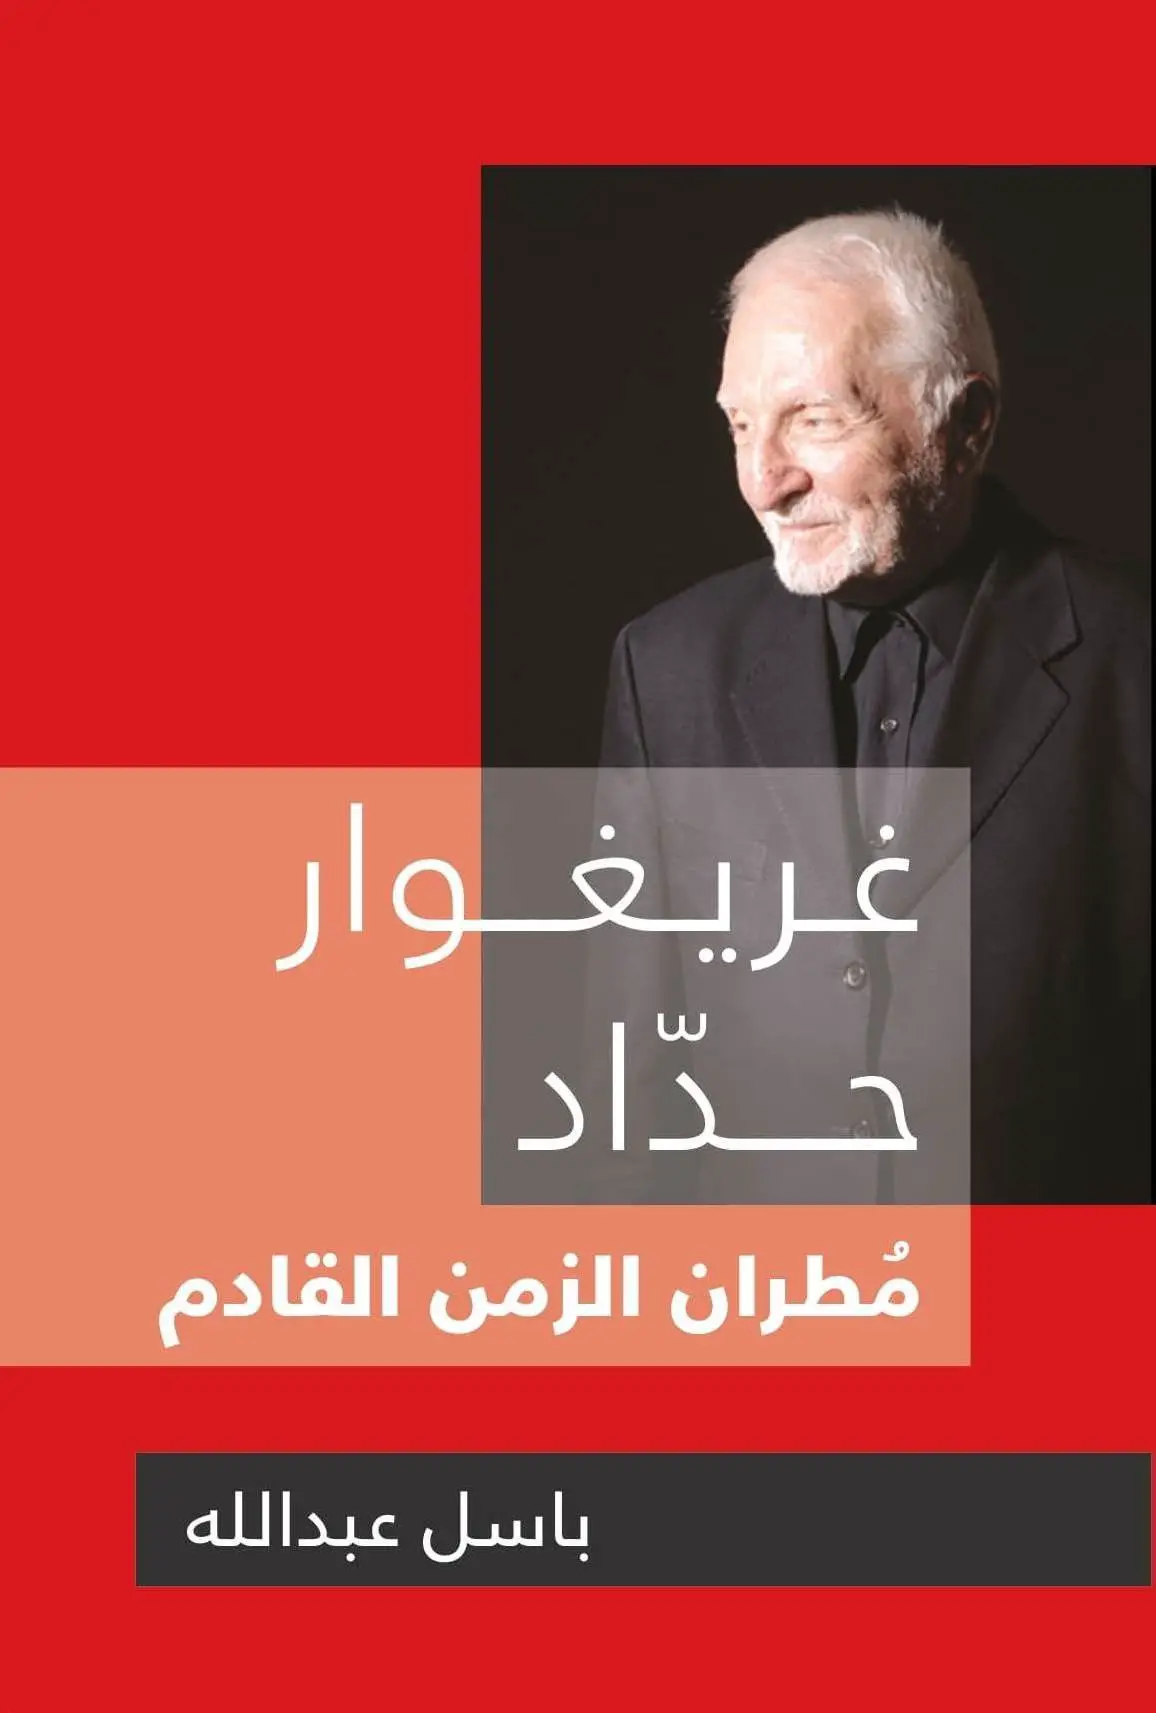 غلاف كتاب «غريغوار حداد مطران الزمن القادم» للكاتب باسل عبدالله